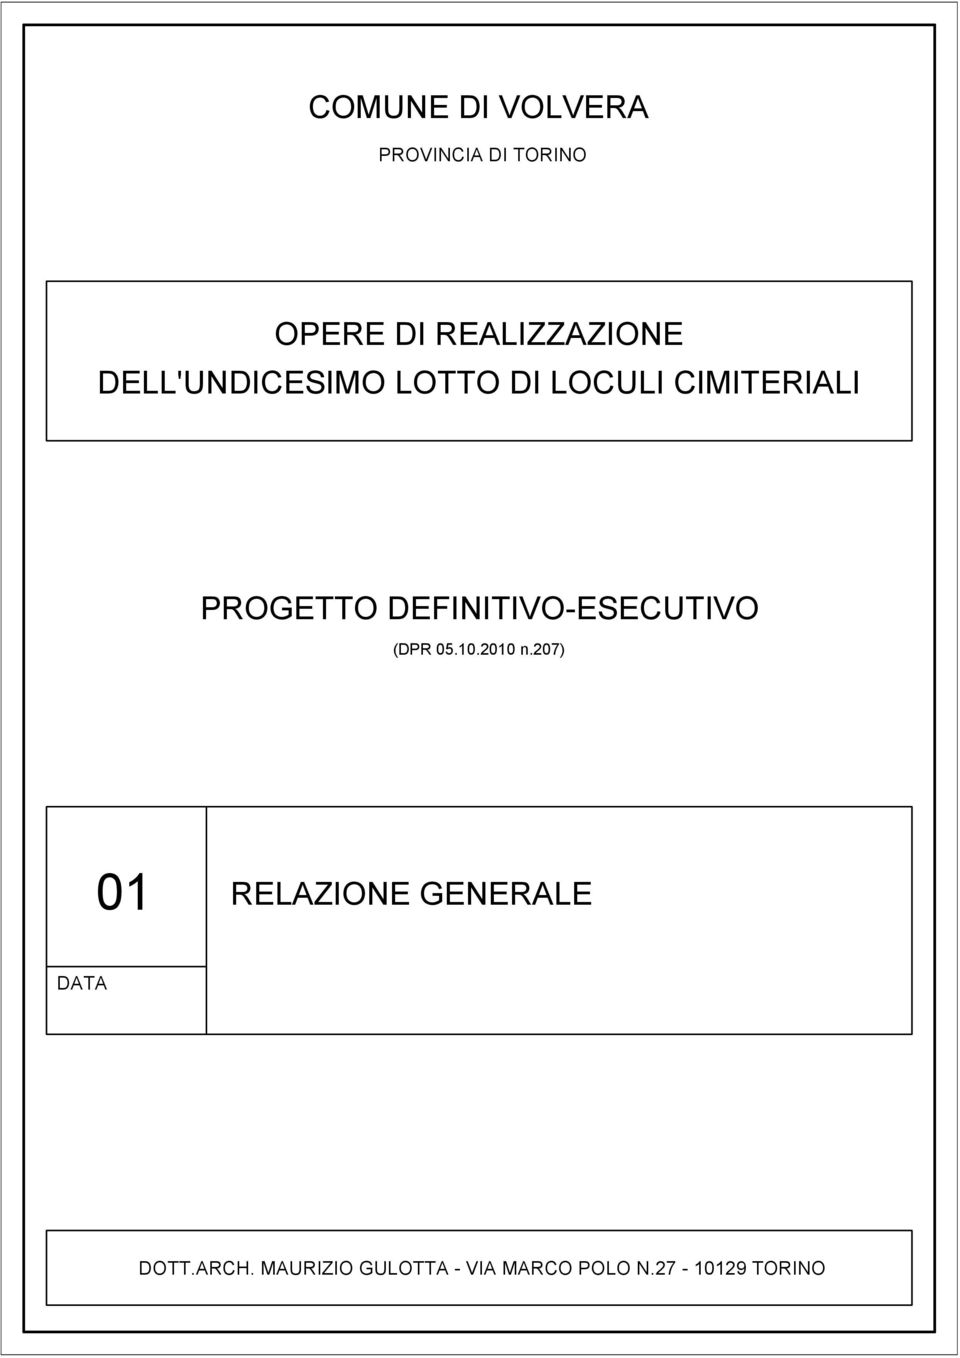 CIMITERIALI PROGETTO DEFINITIVO-ESECUTIVO (DPR 05.10.